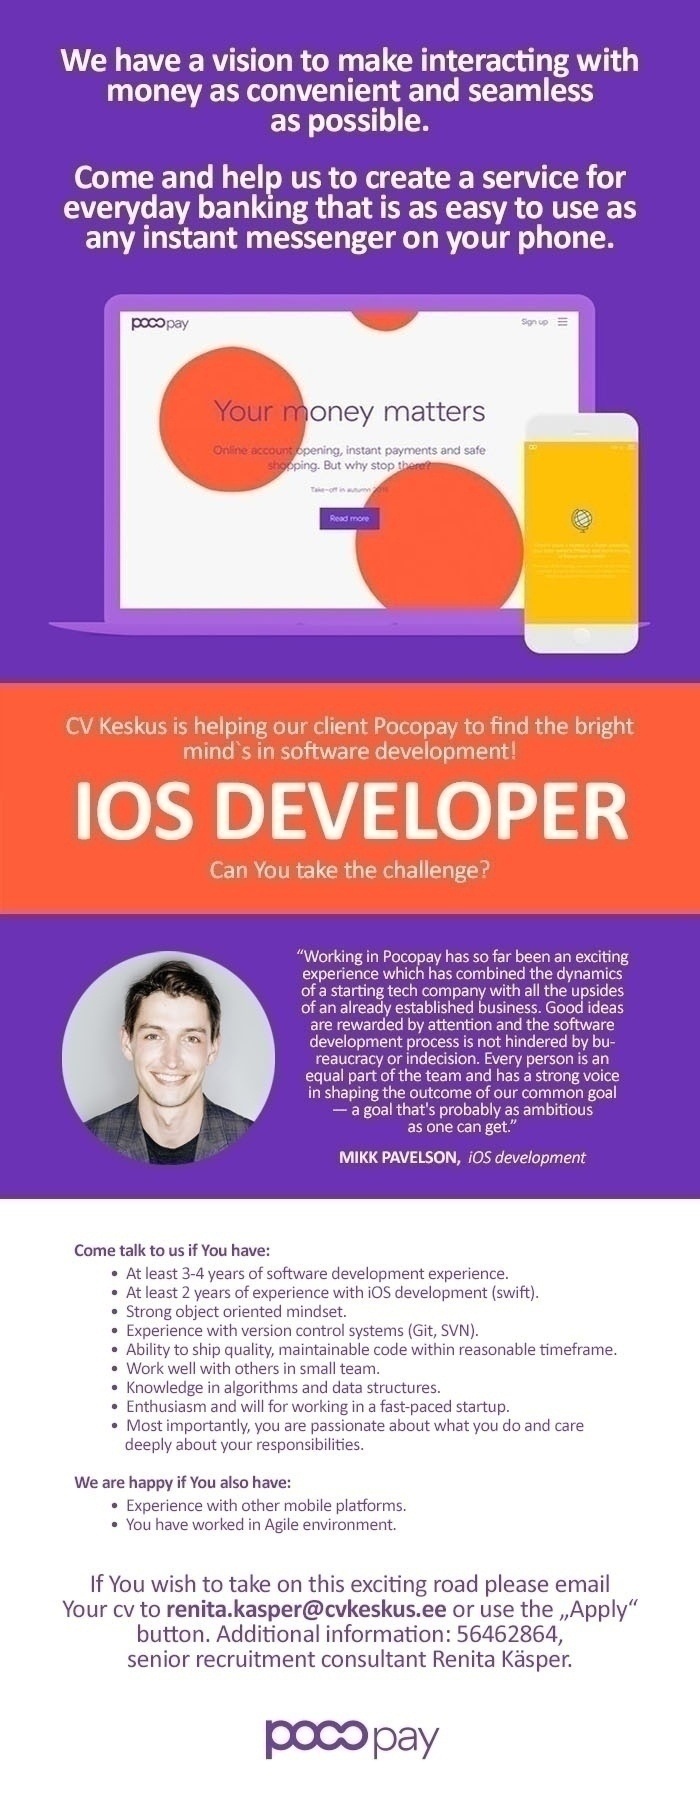 CV KESKUS OÜ Pocopay is looking for iOS developer!